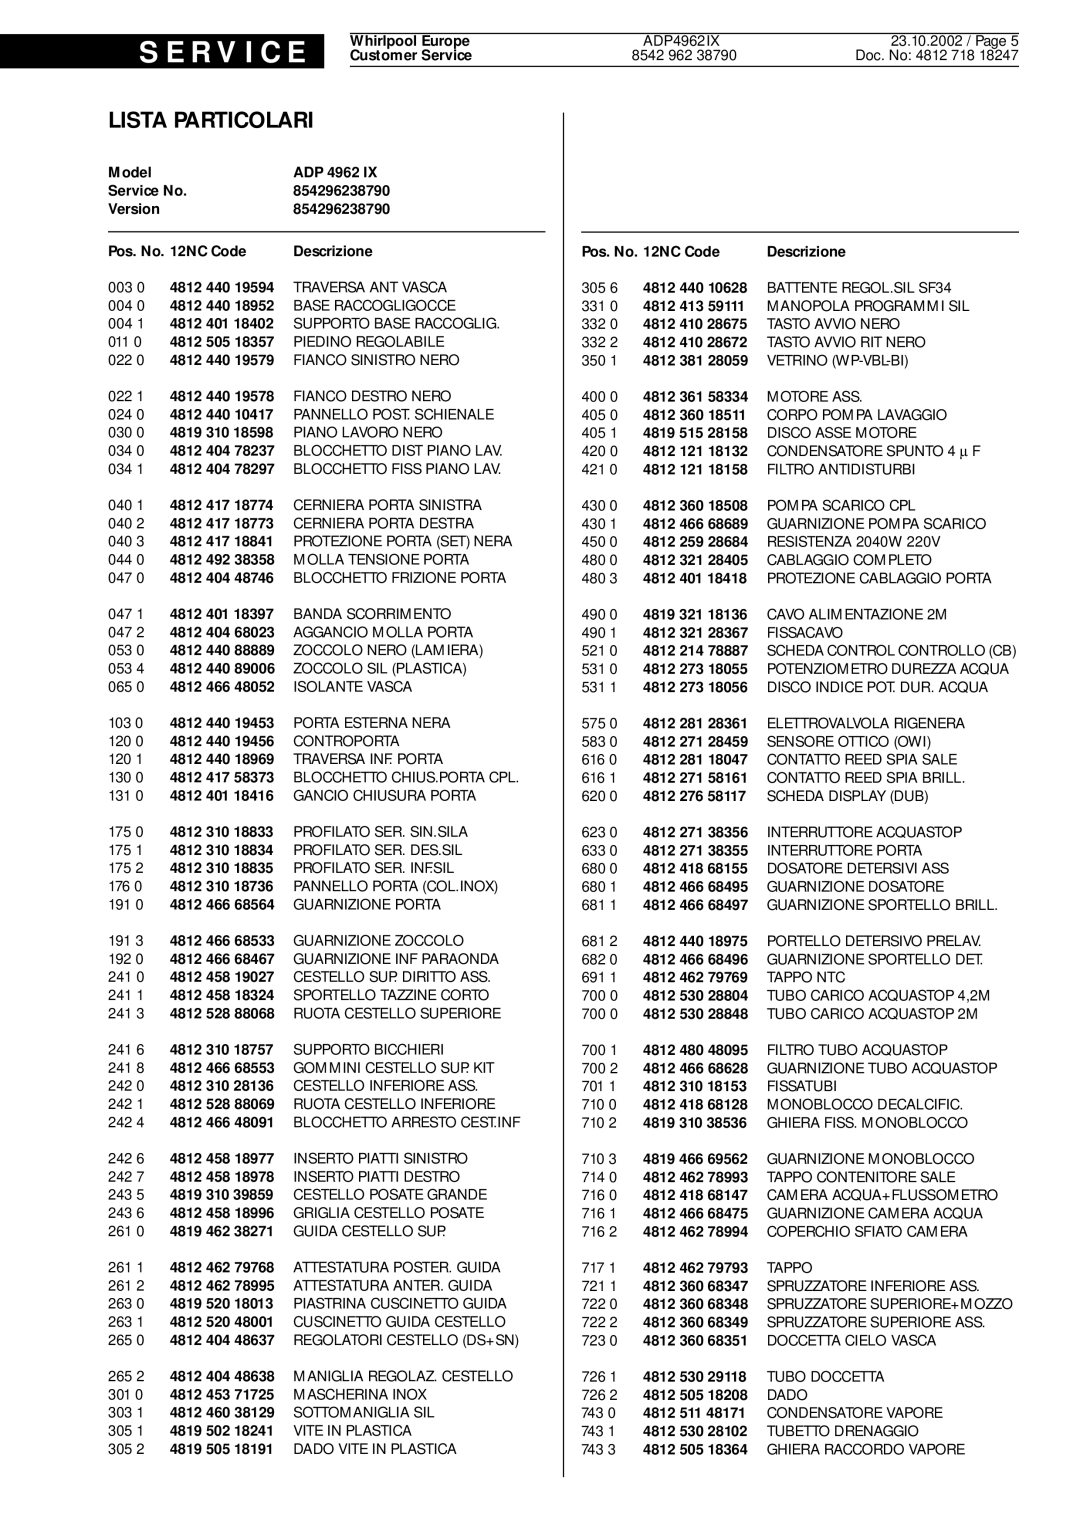 Whirlpool 4962, IX service manual Lista Particolari, S E R V I C E 